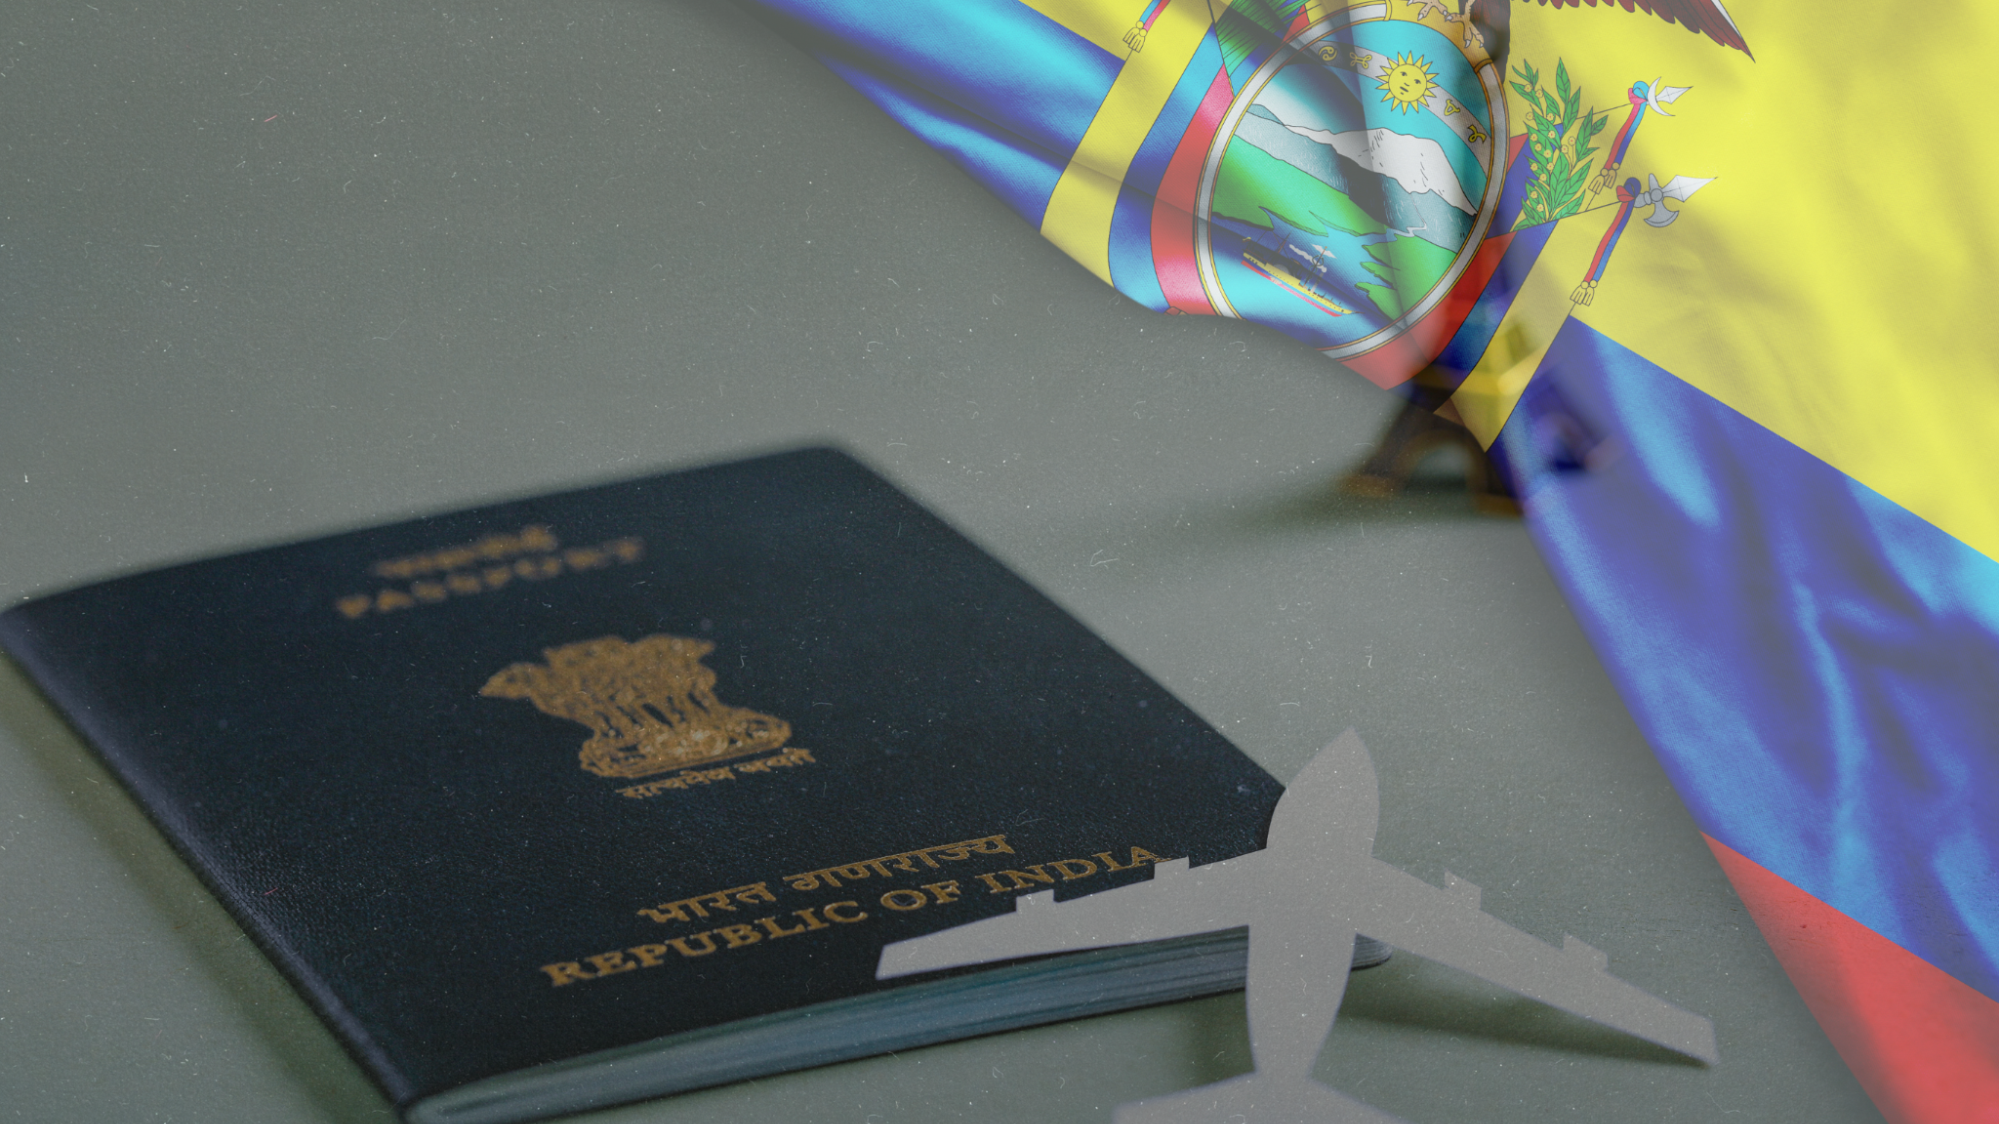 Applying for an Ecuador Visa as an Indian Citizen